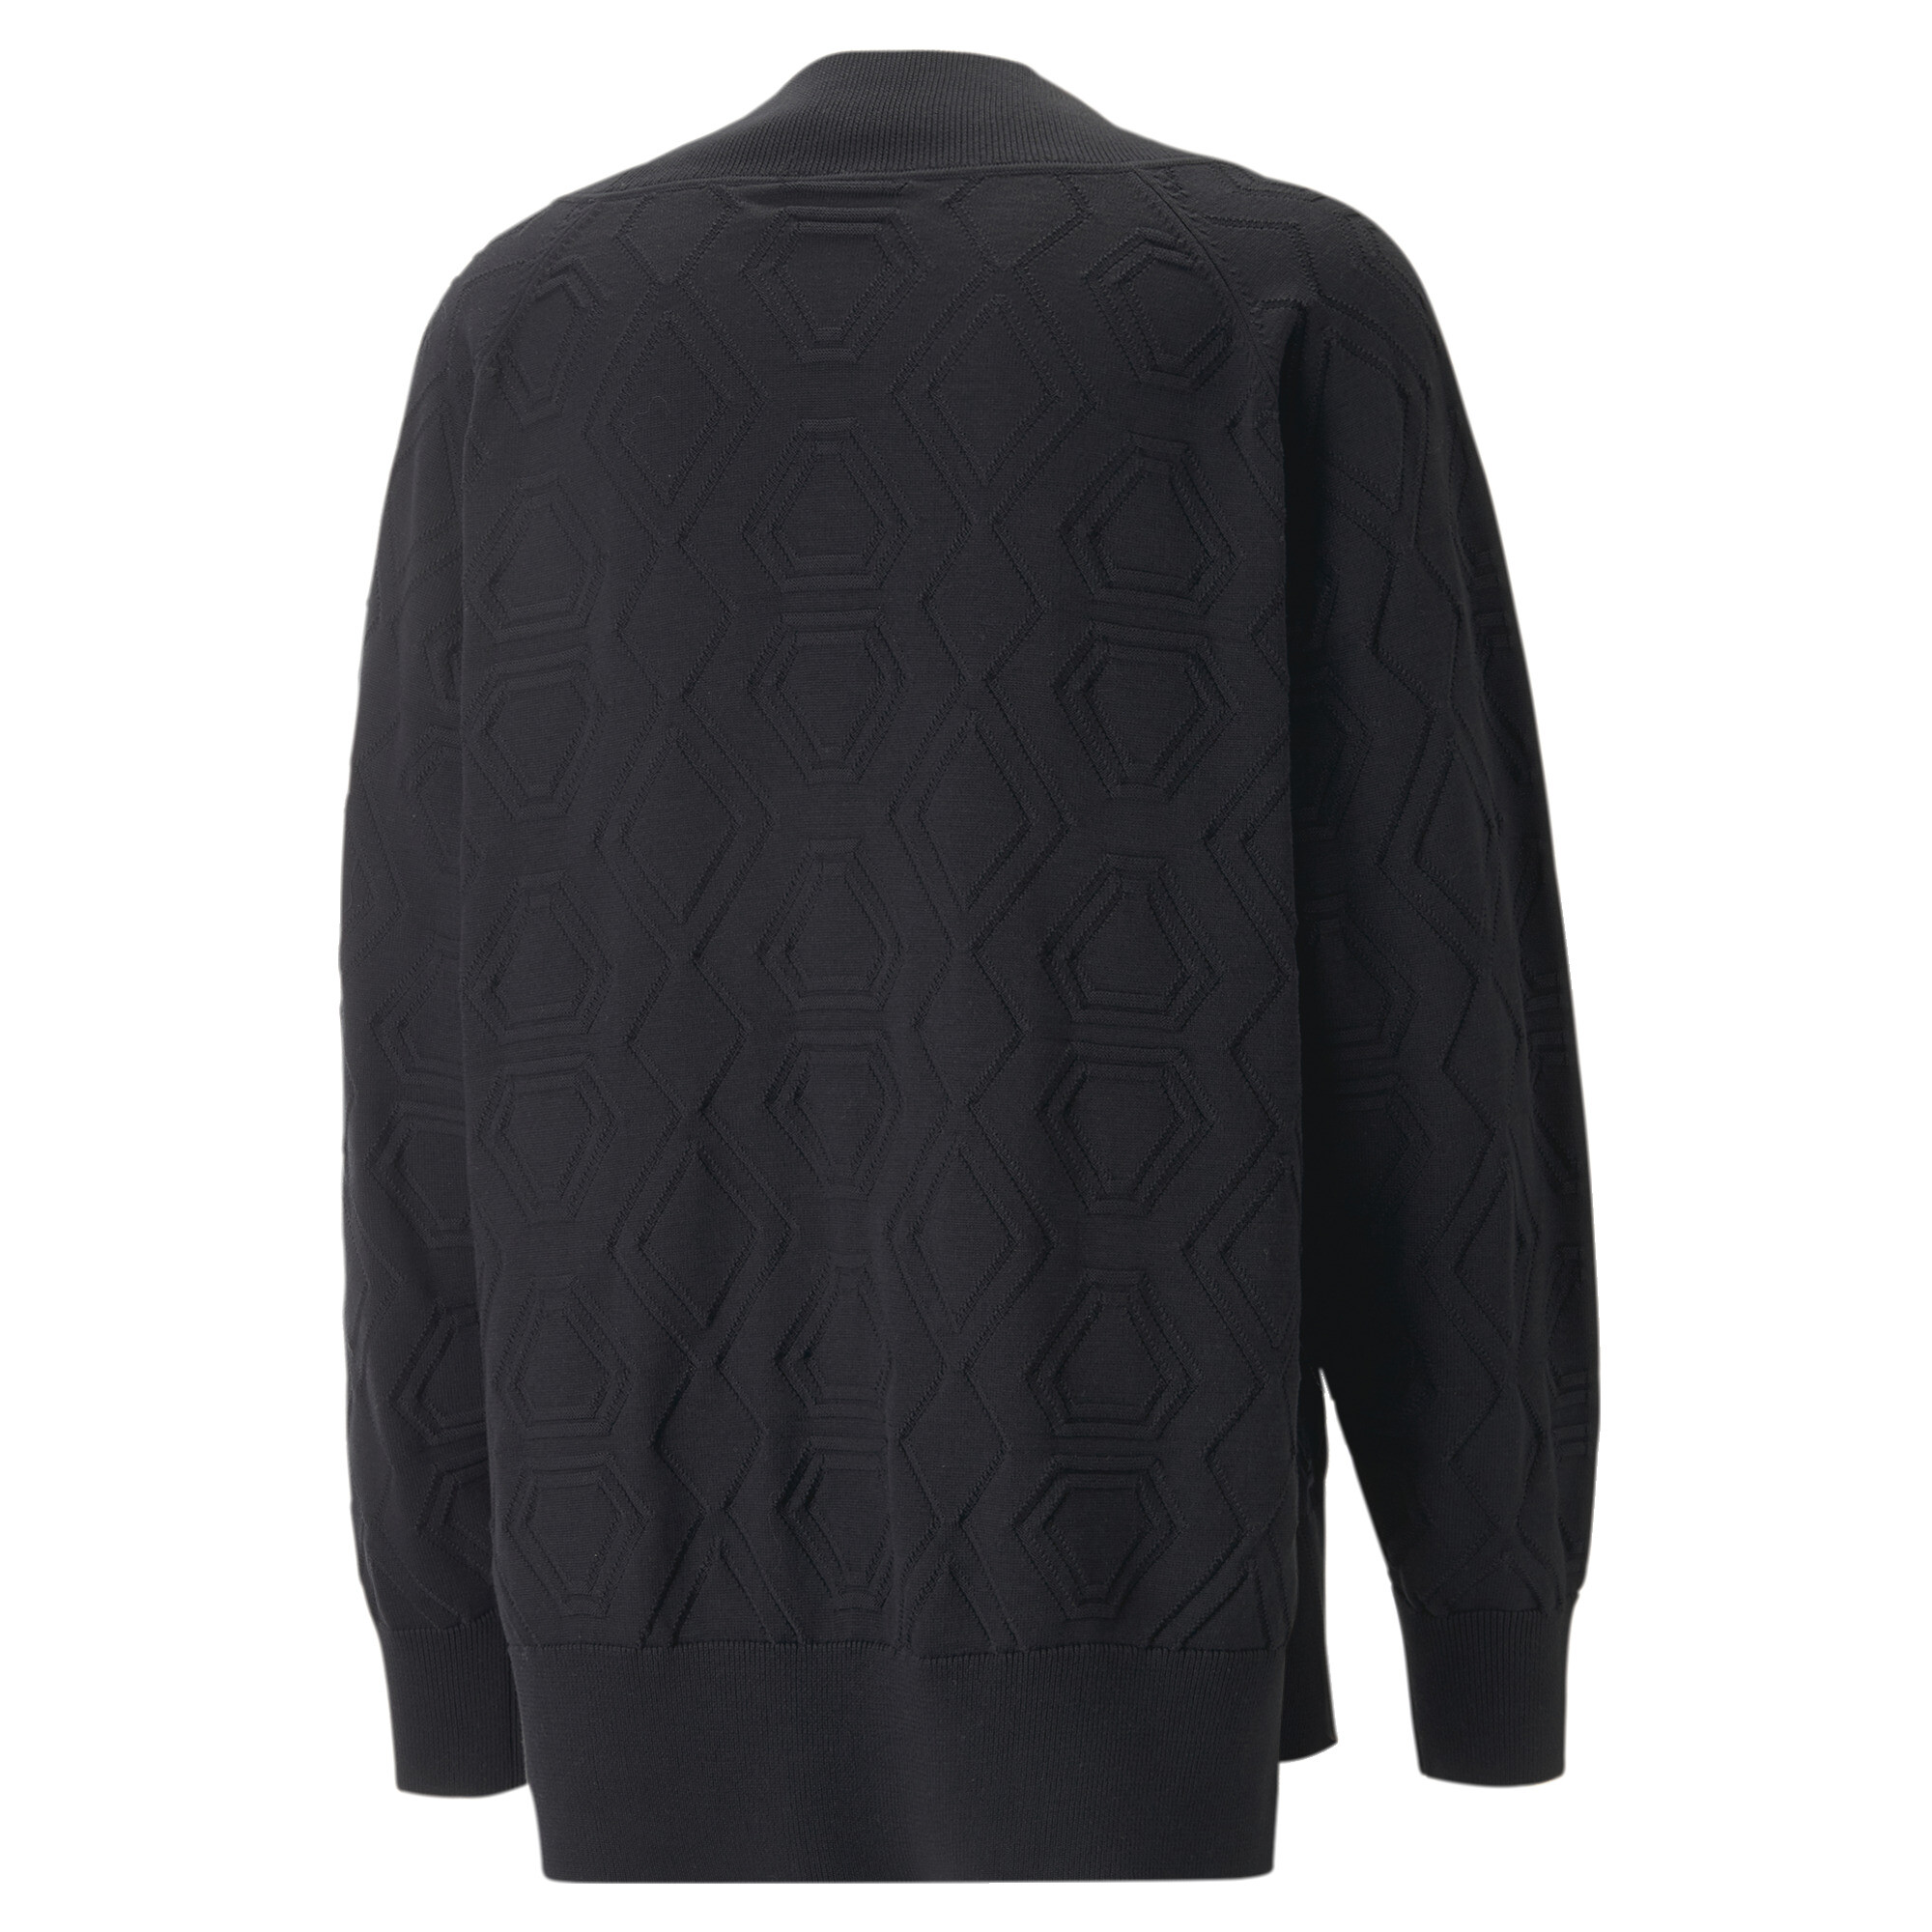 Men's PUMA LUXE SPORT Oversized V-neck Sweatshirt In Black, Size XL